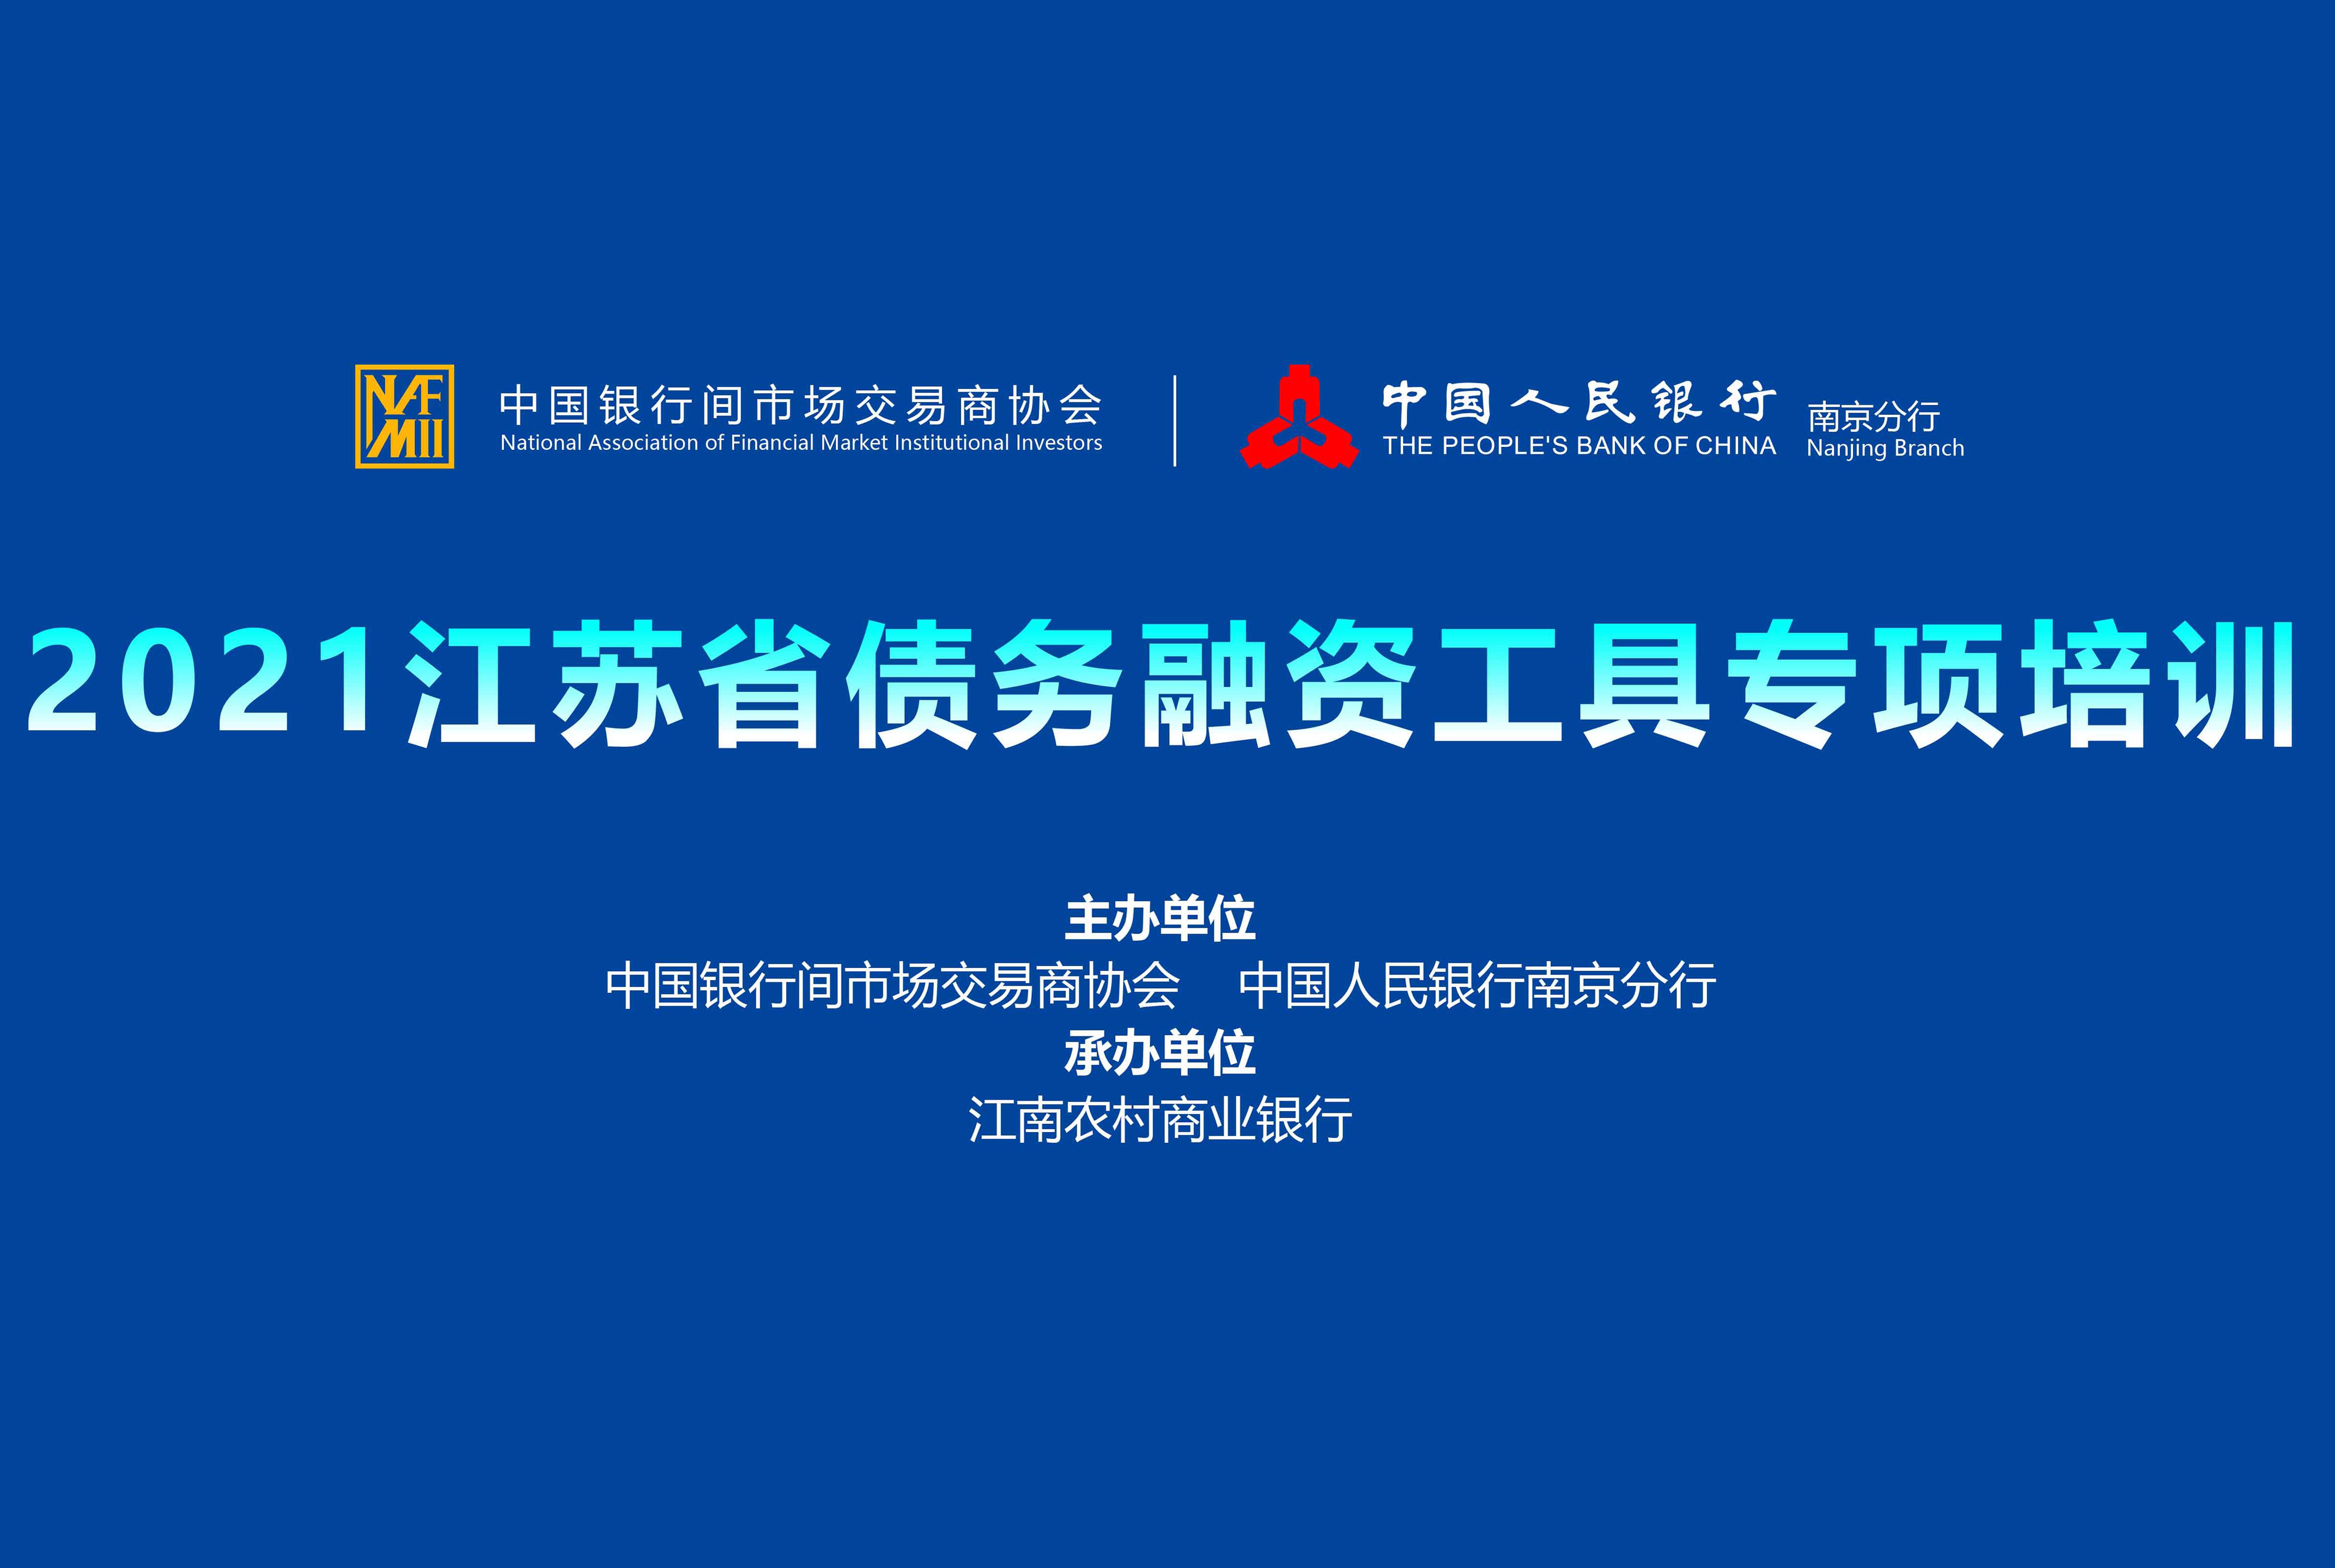 2021江蘇省債務融資工具專項培訓-中國人民銀行